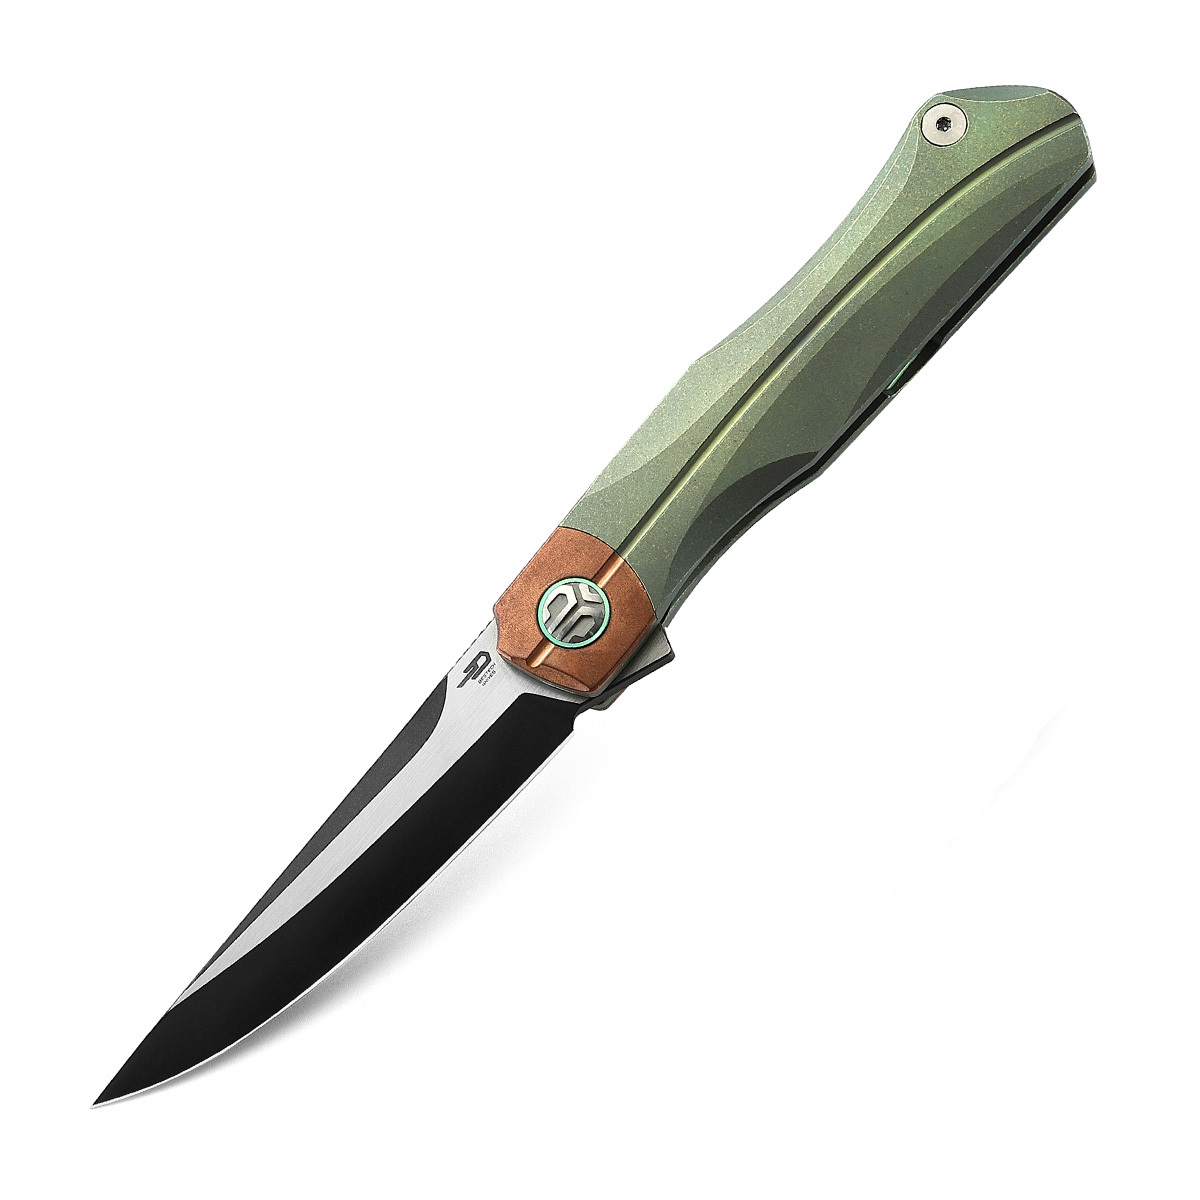 Складной нож Bestech Thyra, сталь M390, рукоять титан/медь, зеленый складной нож bestech swift сталь d2 micarta